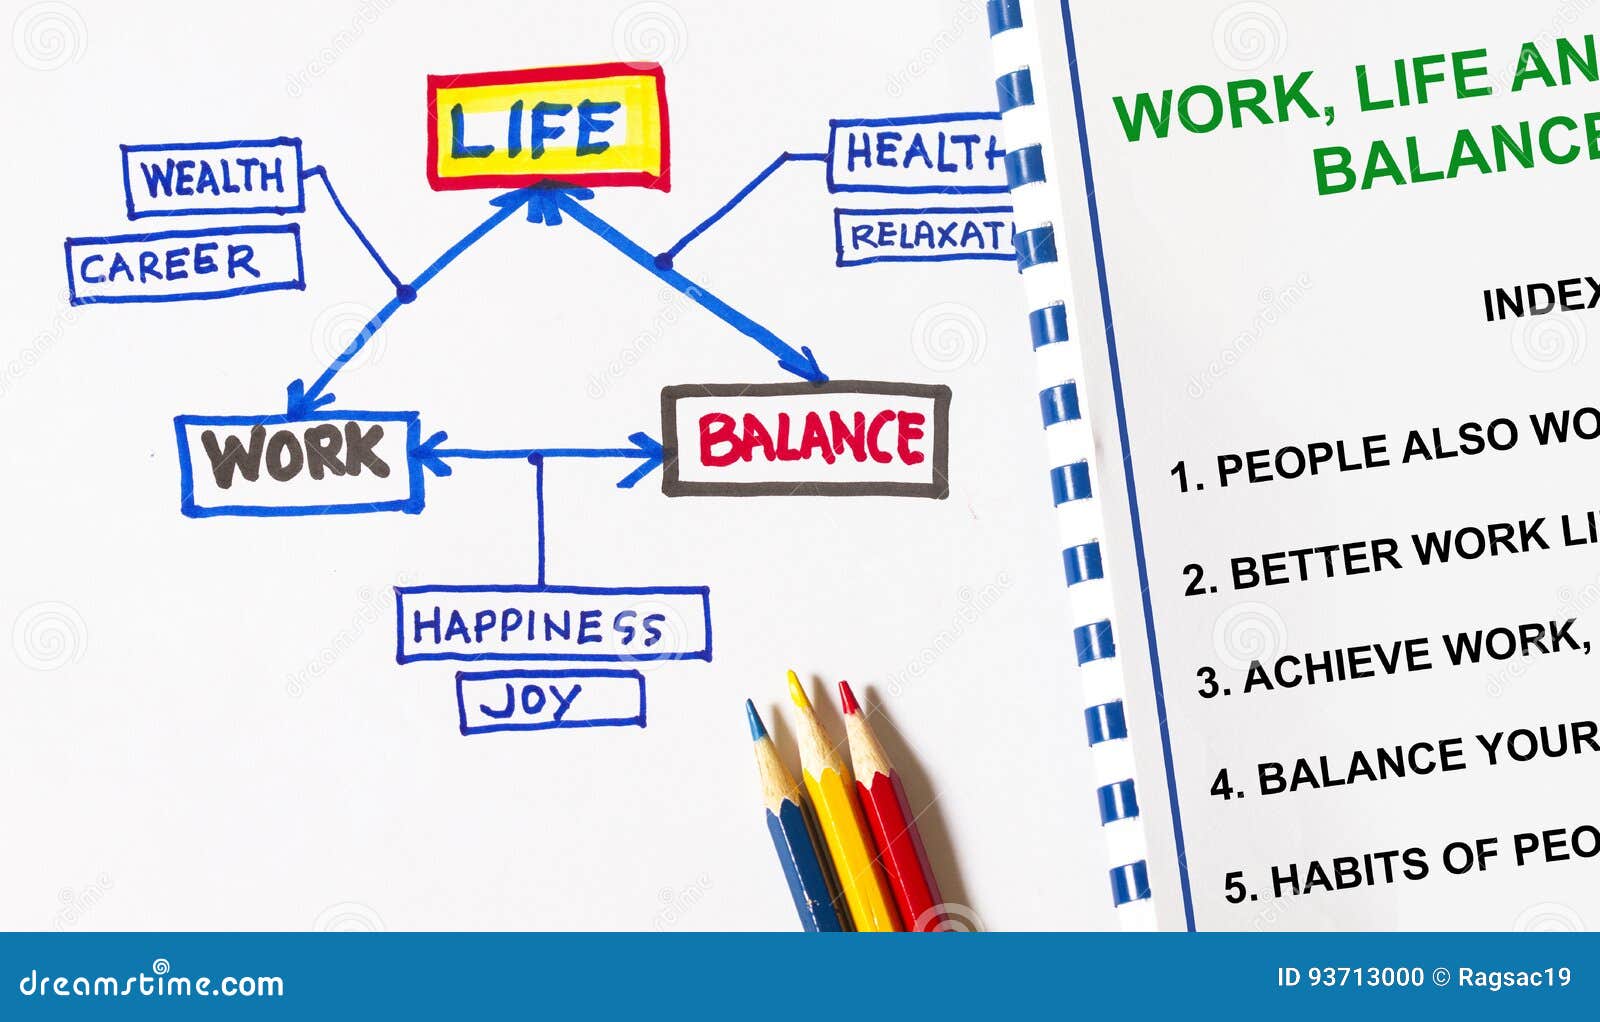 Work life ответы. Баланс между работой и жизнью. Work-Life Balance. Work Life баланс что это.